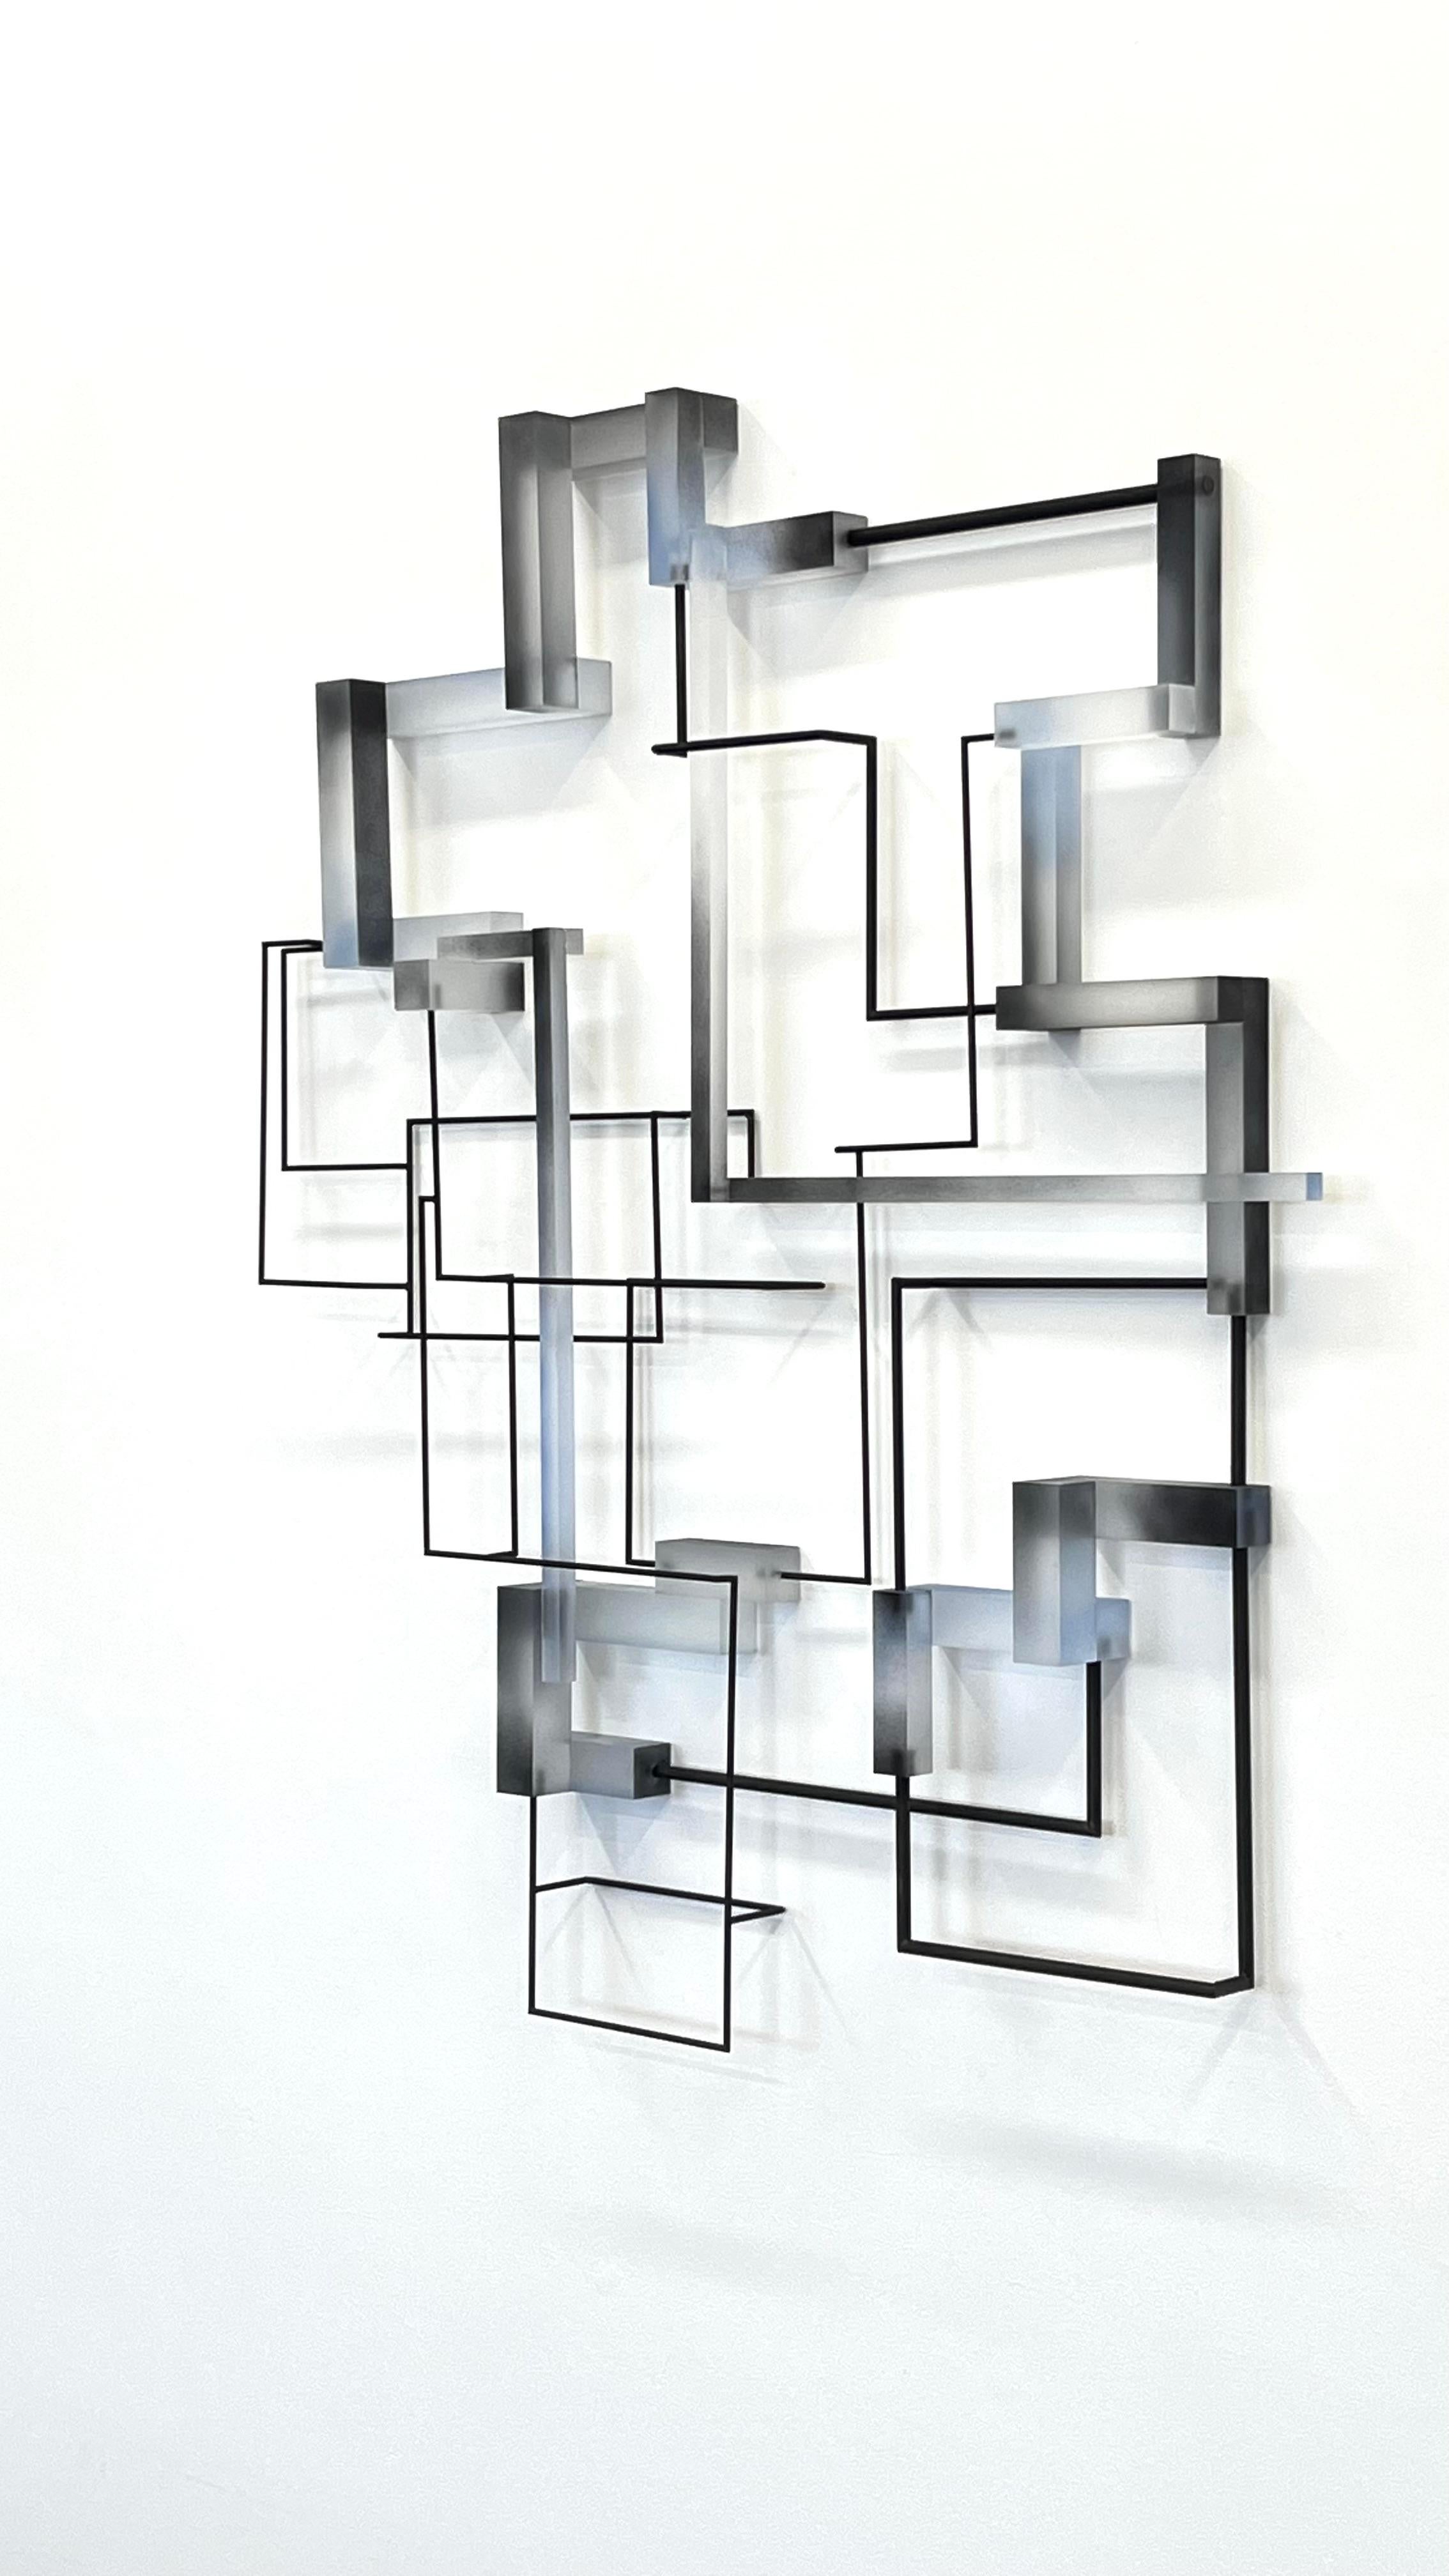 Vanguard: zeitgenössische moderne abstrakte geometrische Skulptur (Geometrische Abstraktion), Sculpture, von Greg Chann